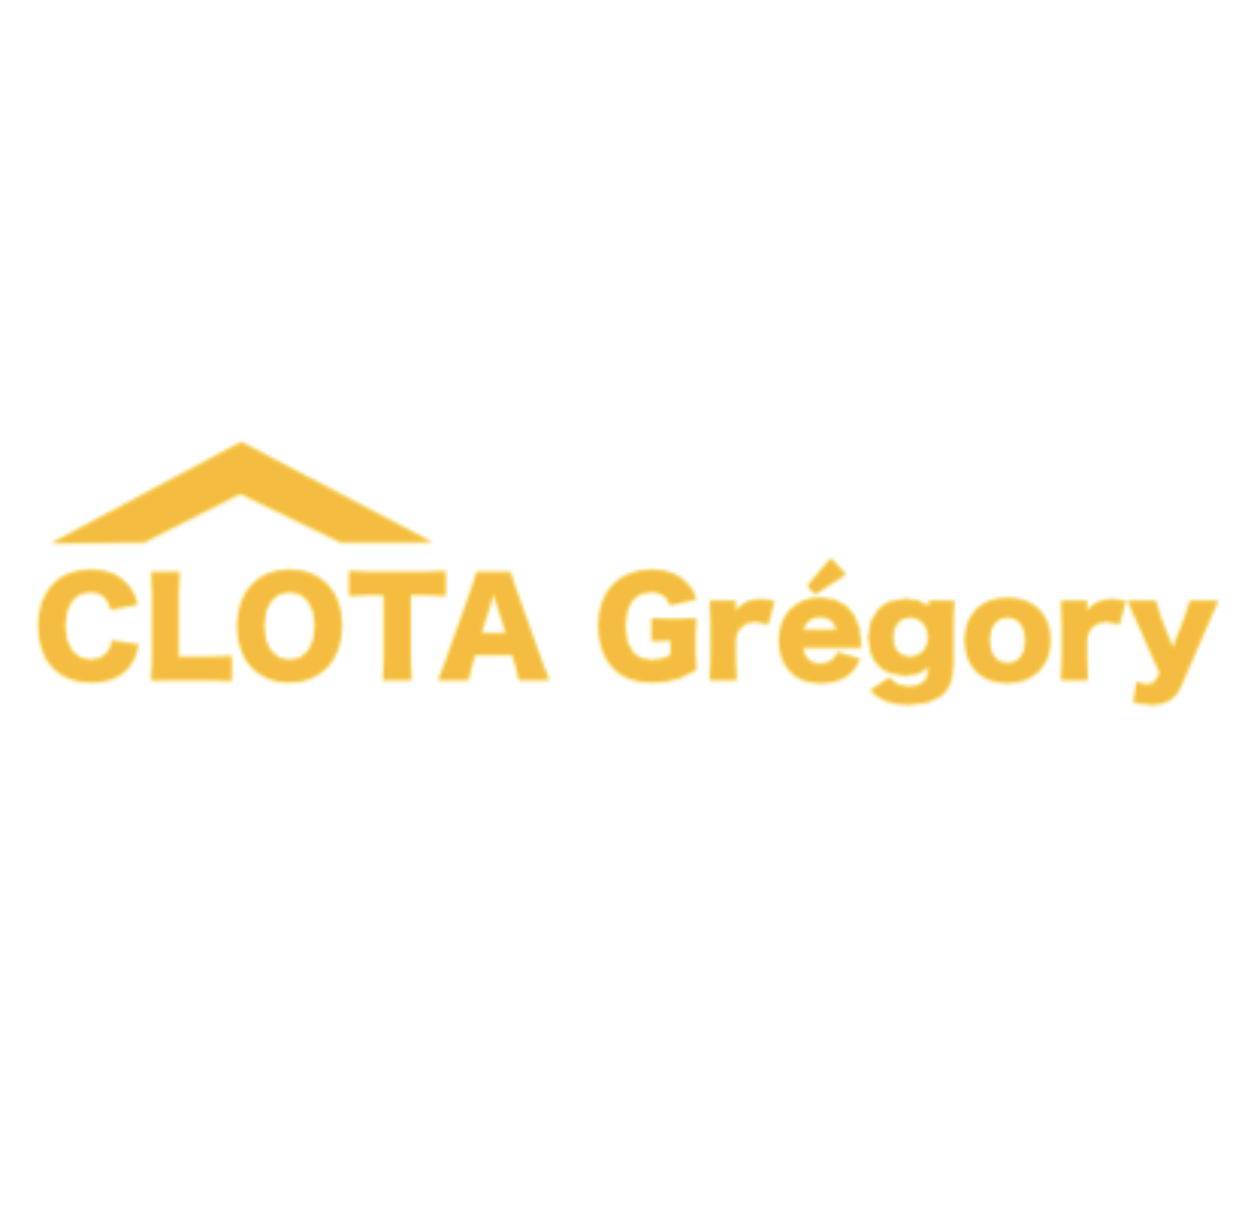 Logo Gregory Clota Construction